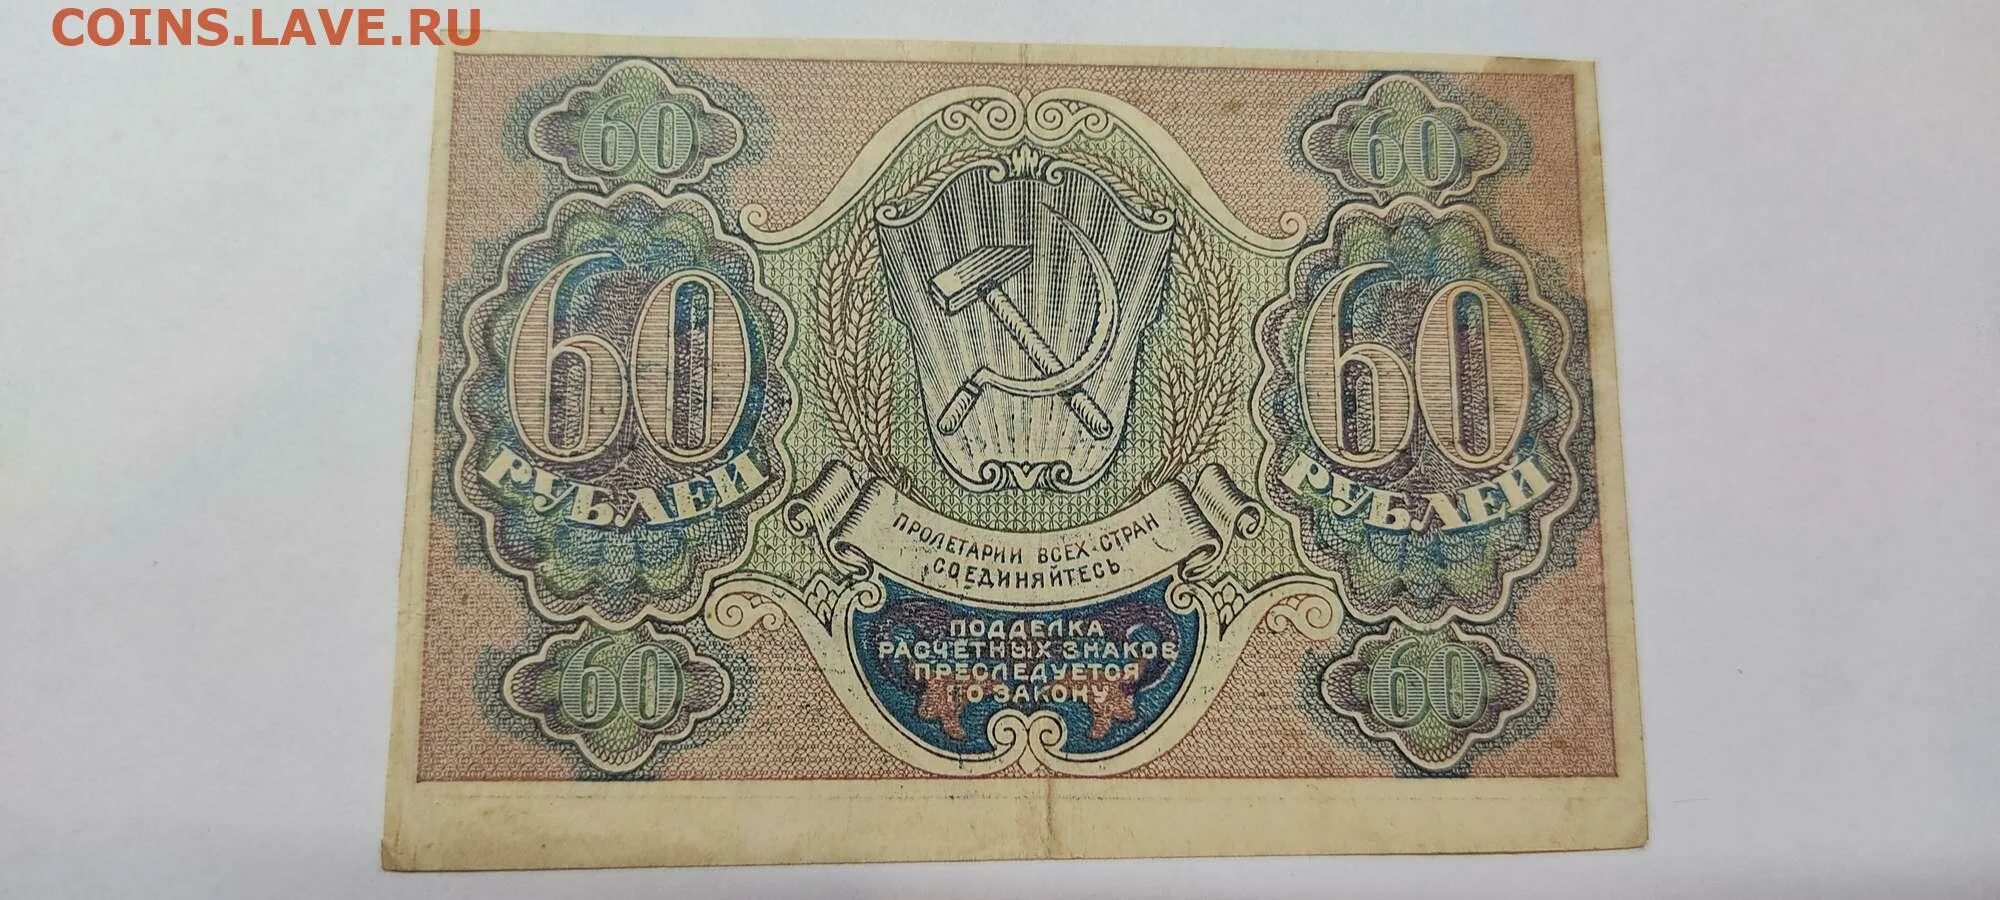 Что стоит 60 рублей. 60 Рублей. Расчетный знак 60 рублей. Рубли в 60-х годах XIX В. 60 Рублей фото.